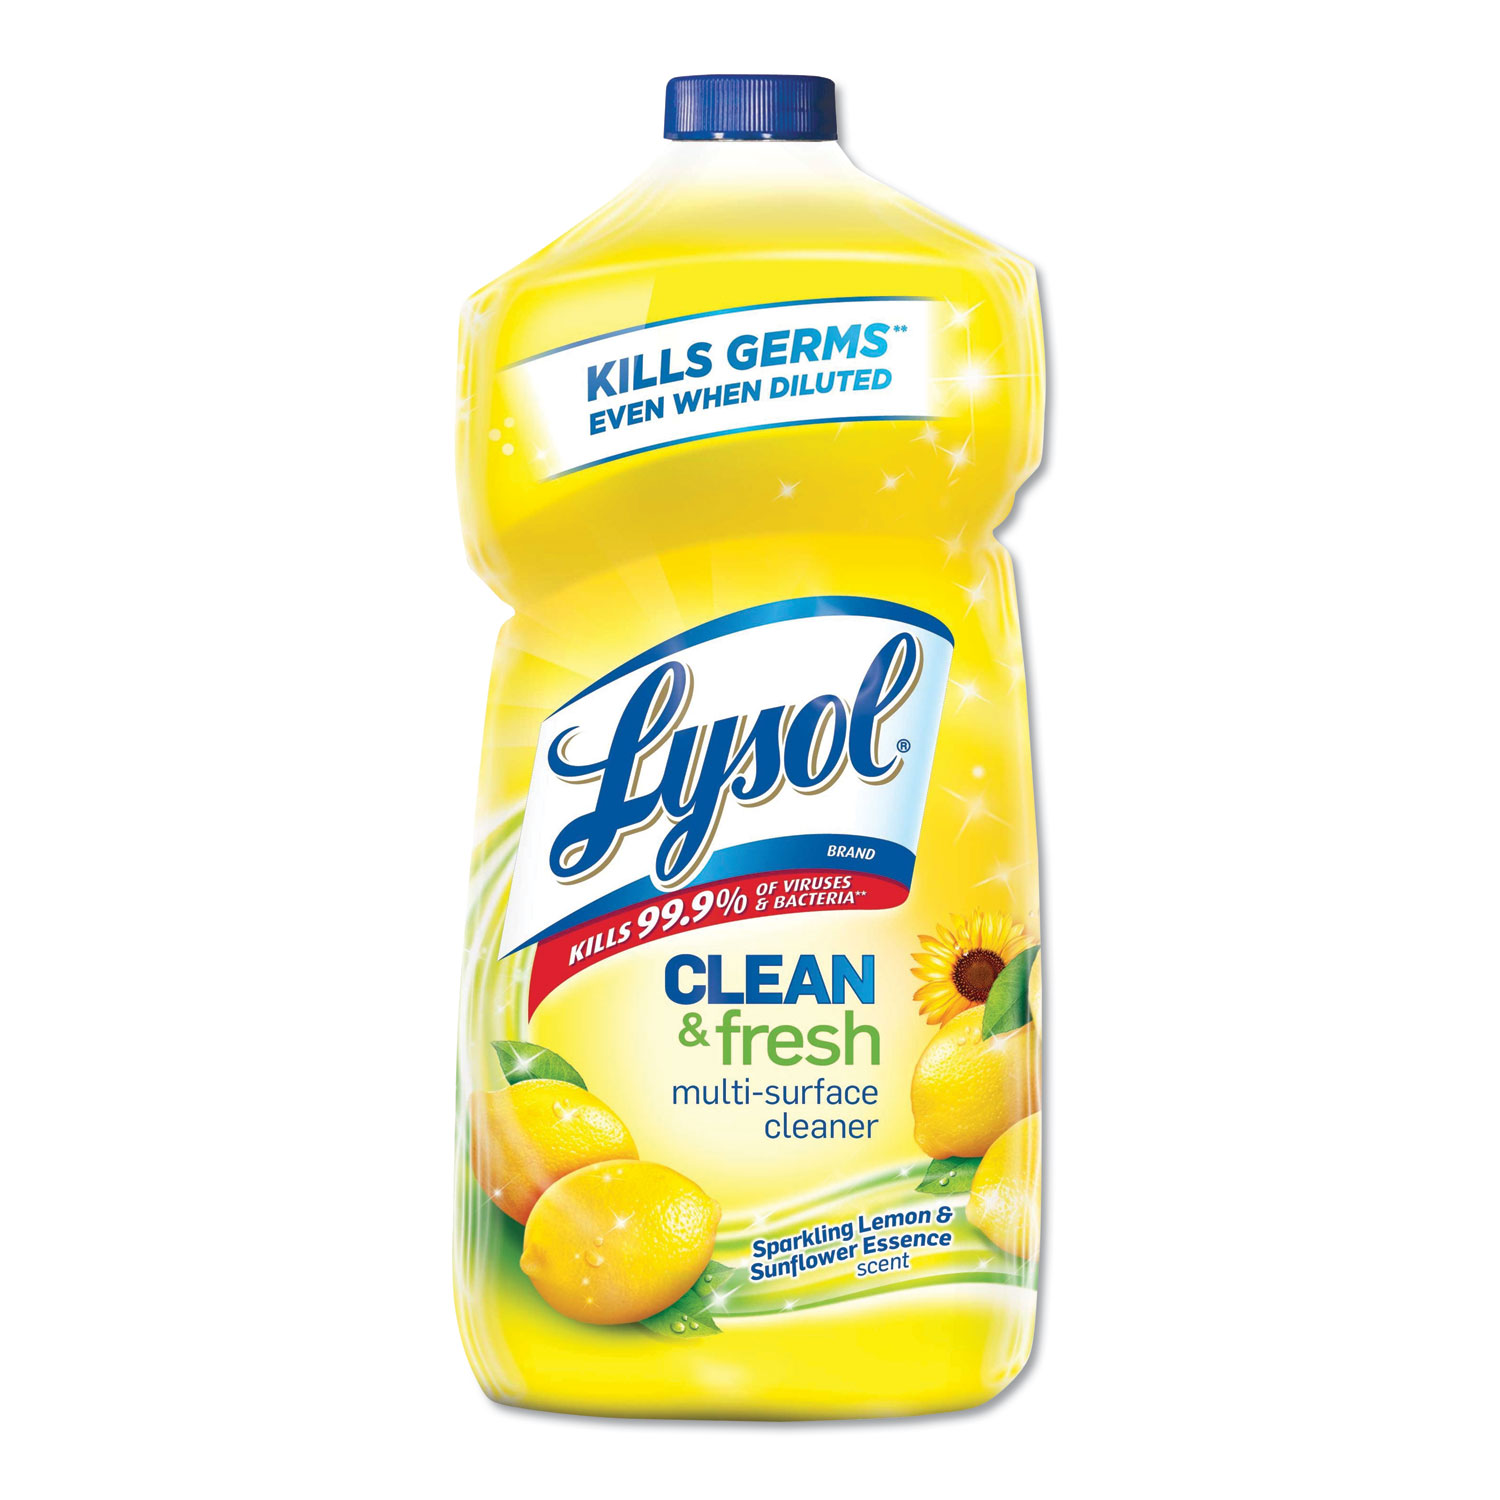 Clean & Fresh Multi-Surface Cleaner, Lemon &Sunflower Essence Scent, 40oz Bottle